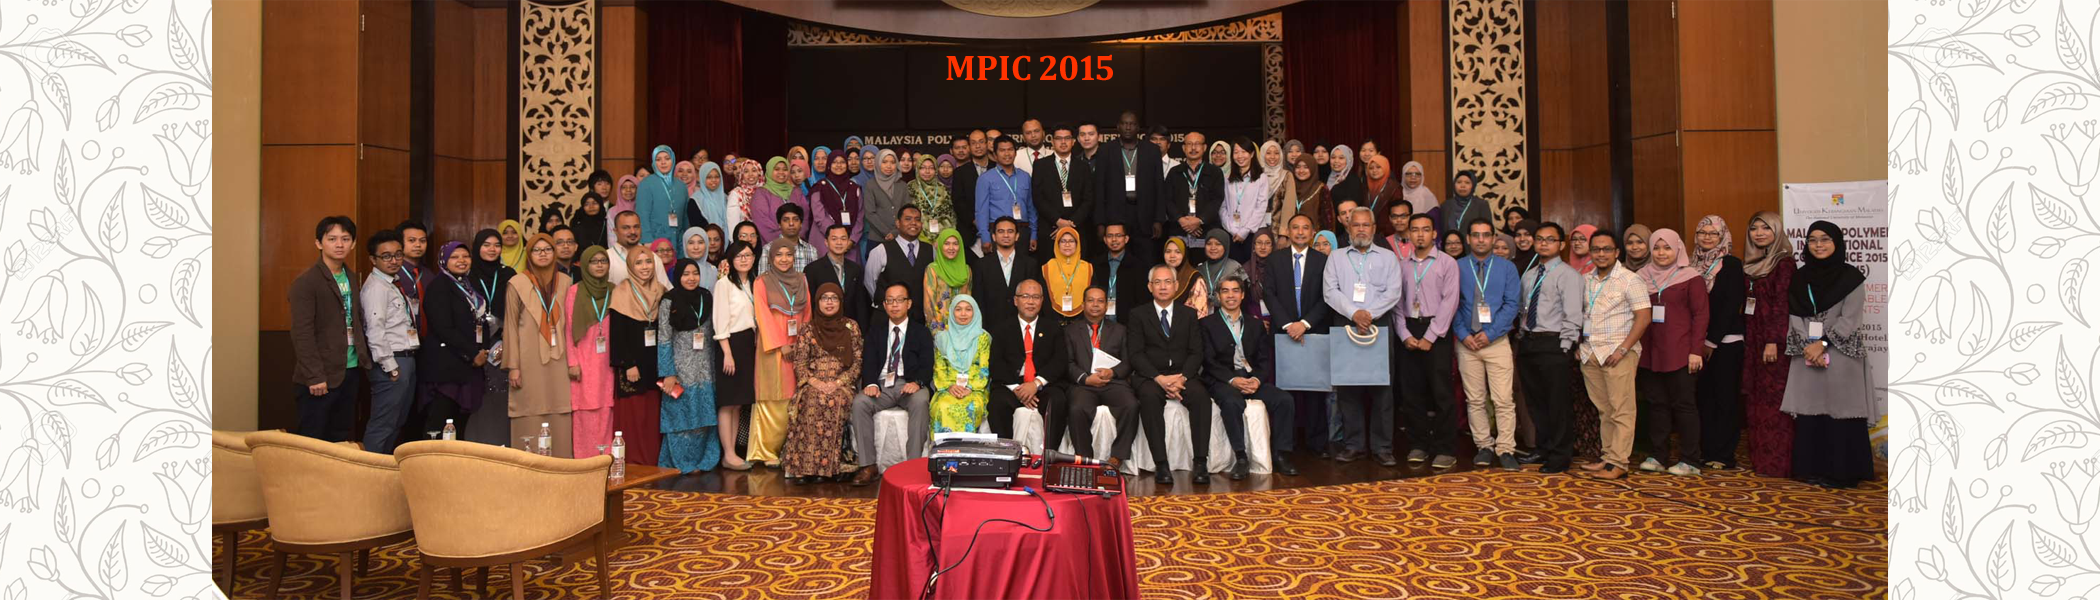 MPIC 2015